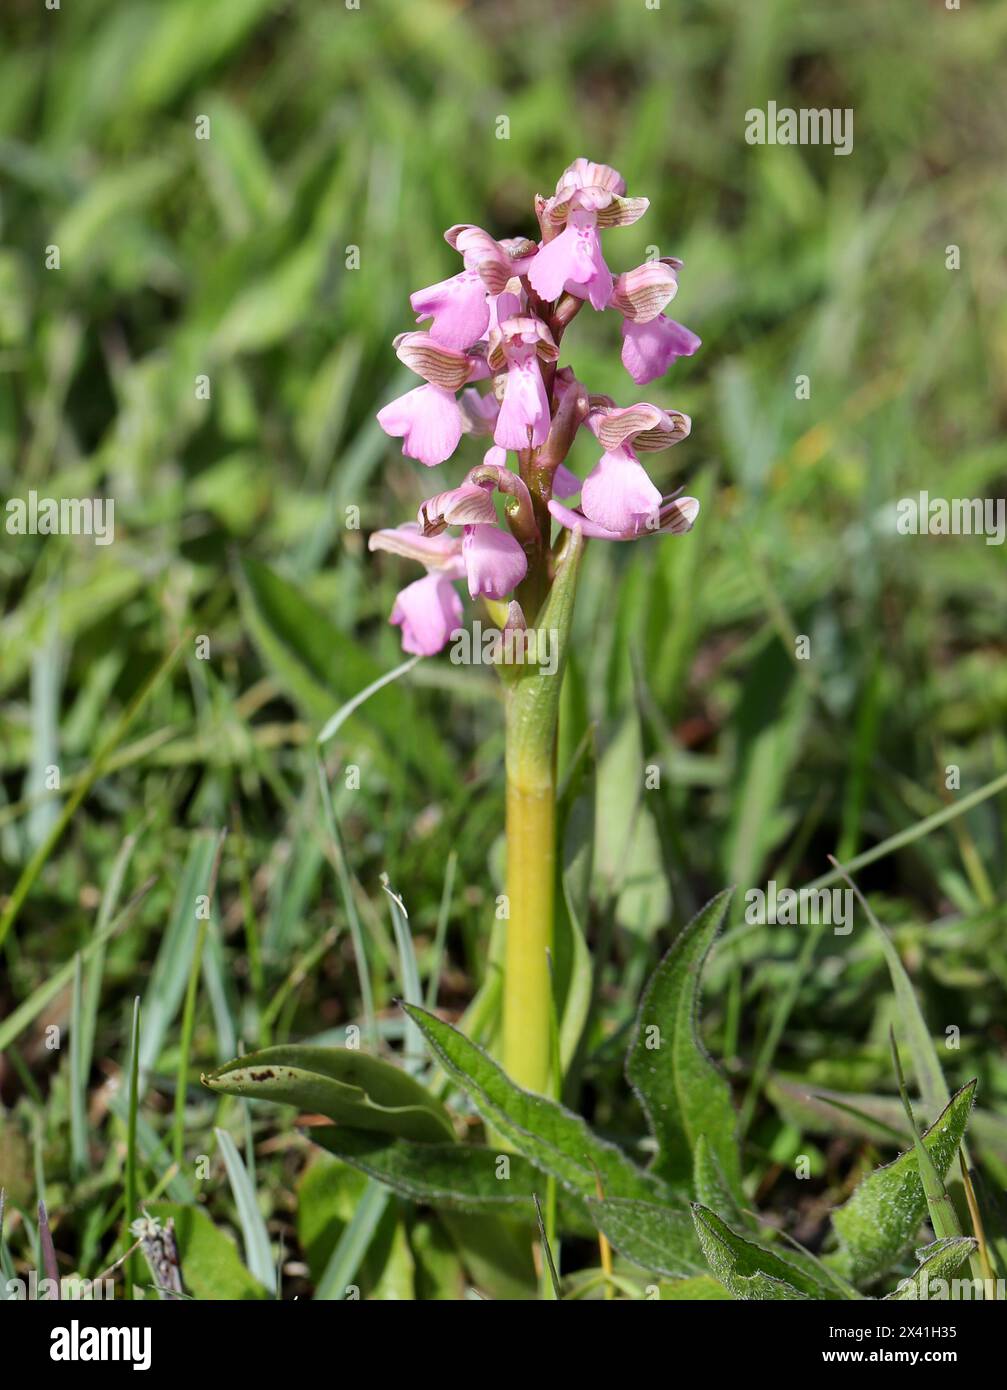 Orchidée à ailes vertes ou orchidée à veines vertes, Anacamptis morio (Orchis morio), Orchidaceae. Bernwood Meadows, Oxfordshire, Royaume-Uni. Variation rose. Banque D'Images